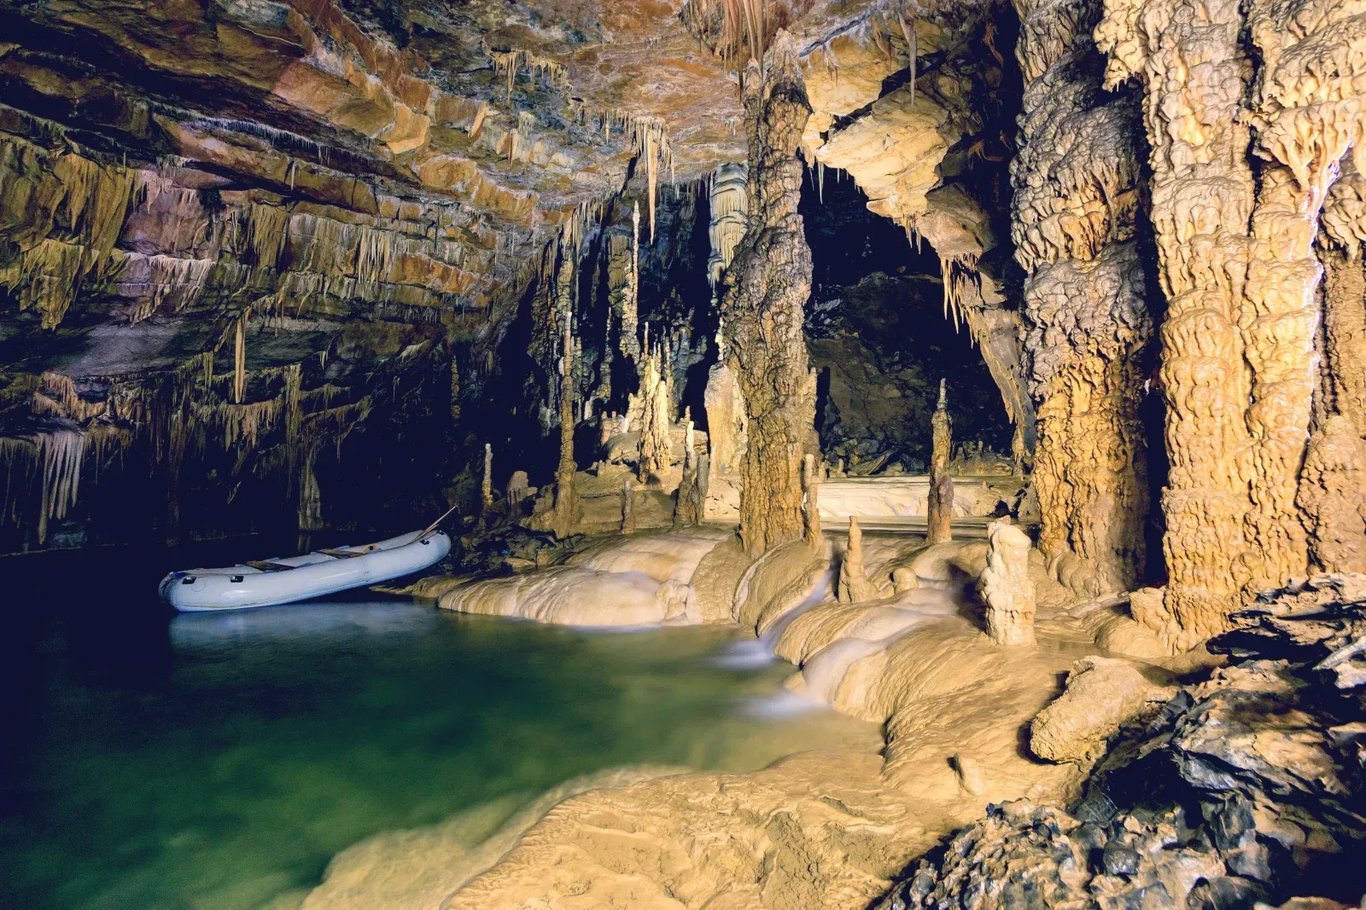 Krizna Höhle, Slowenien - Die längste Quellhöhle der Welt